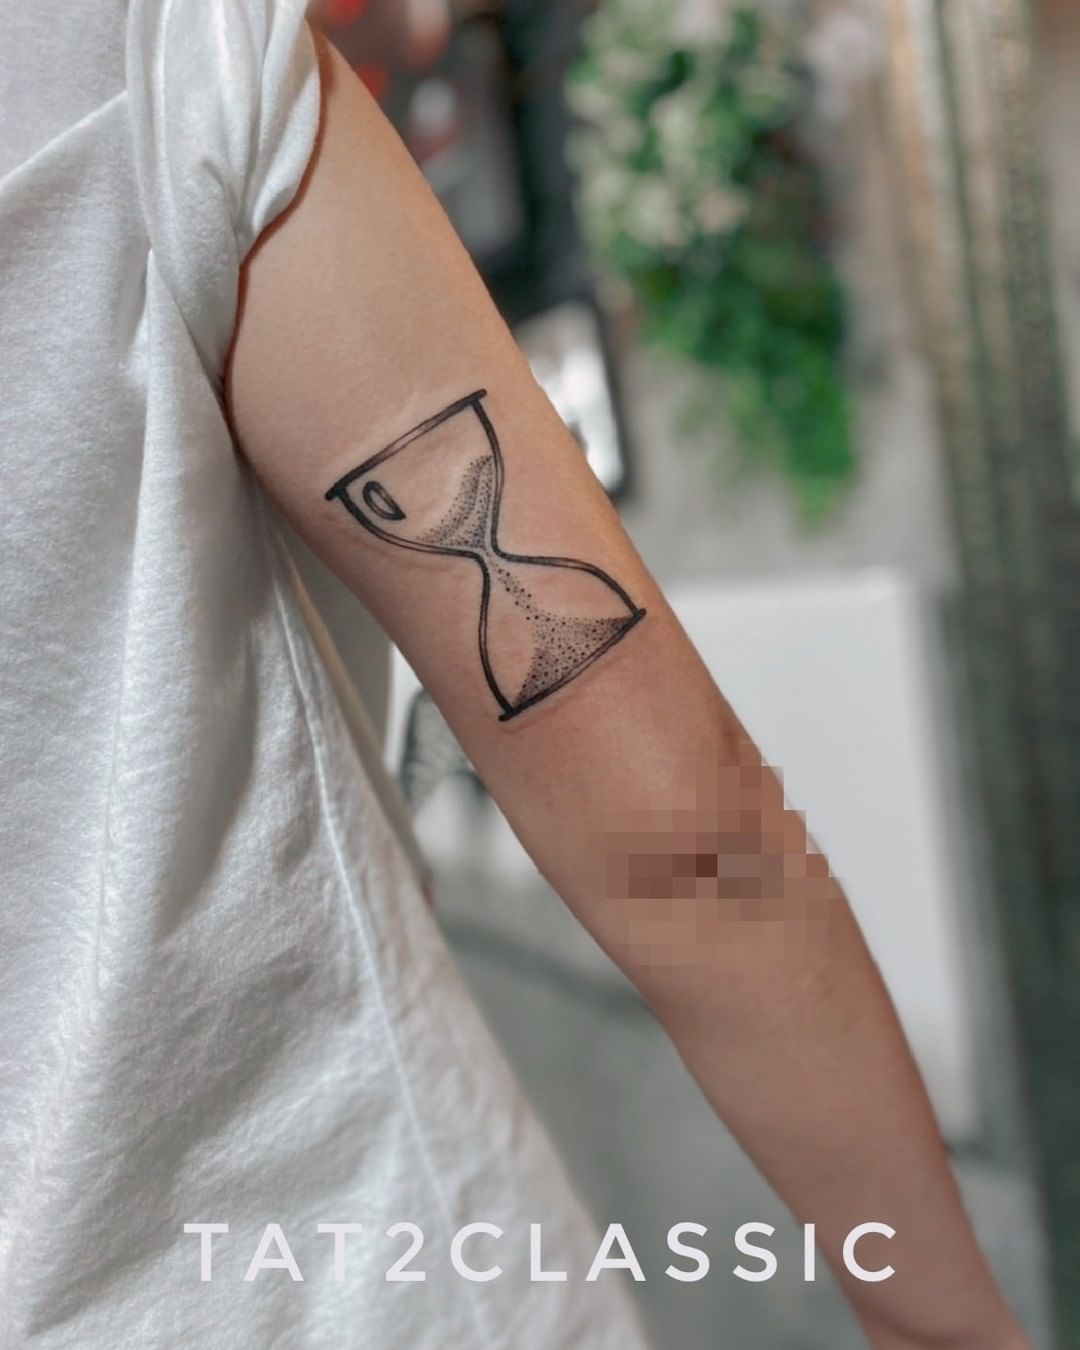 Tatuaje de reloj de arena en tinta negra en el brazo